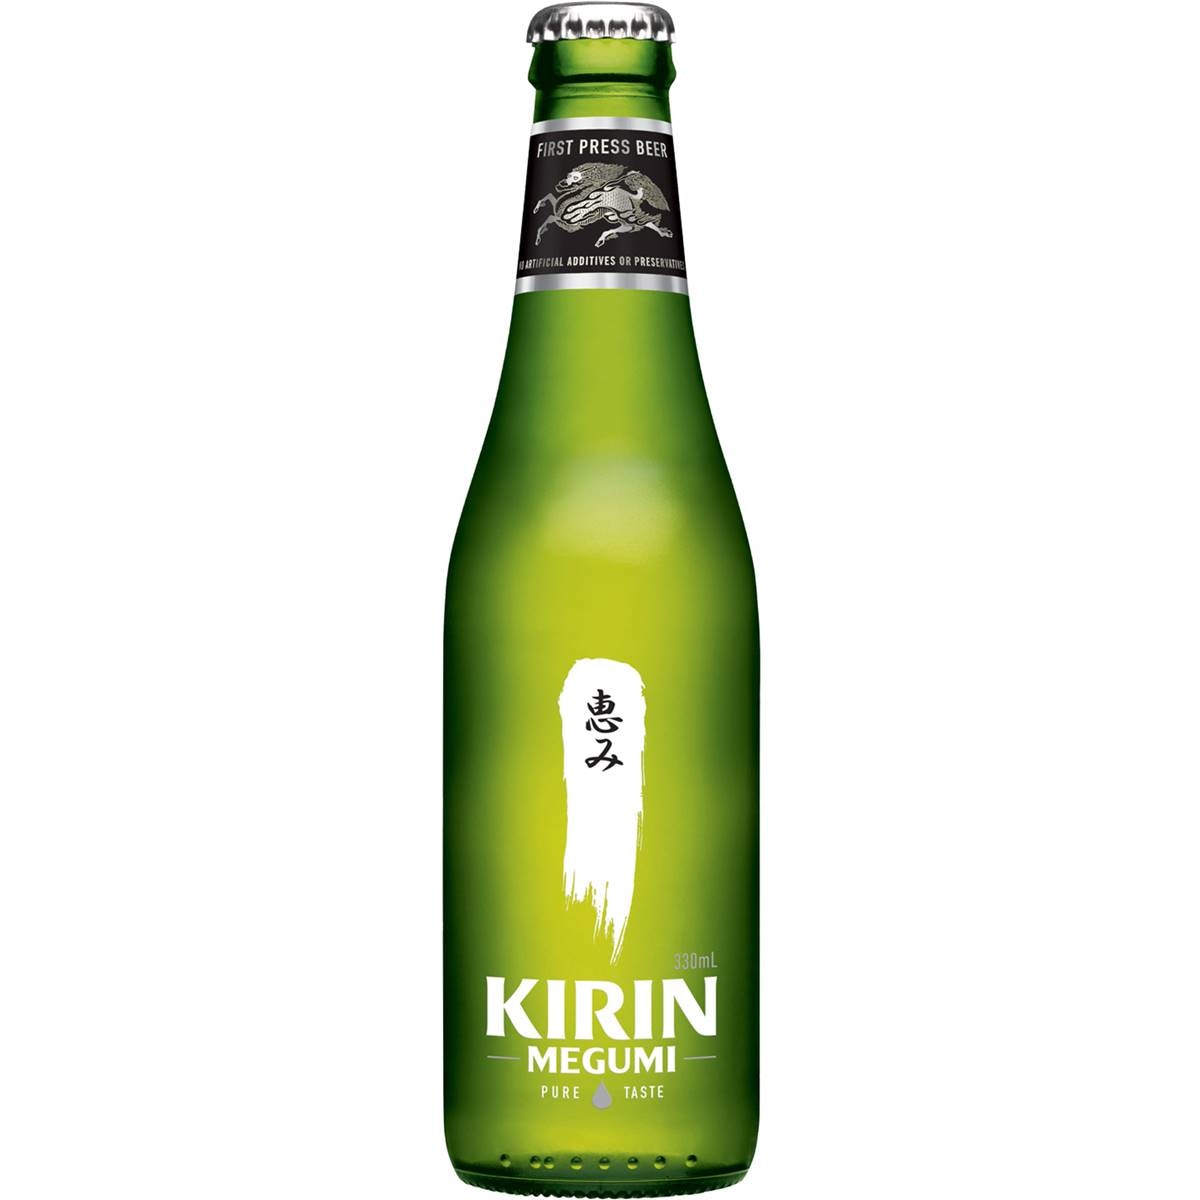 Calories in Kirin Megumi Lager Bottle